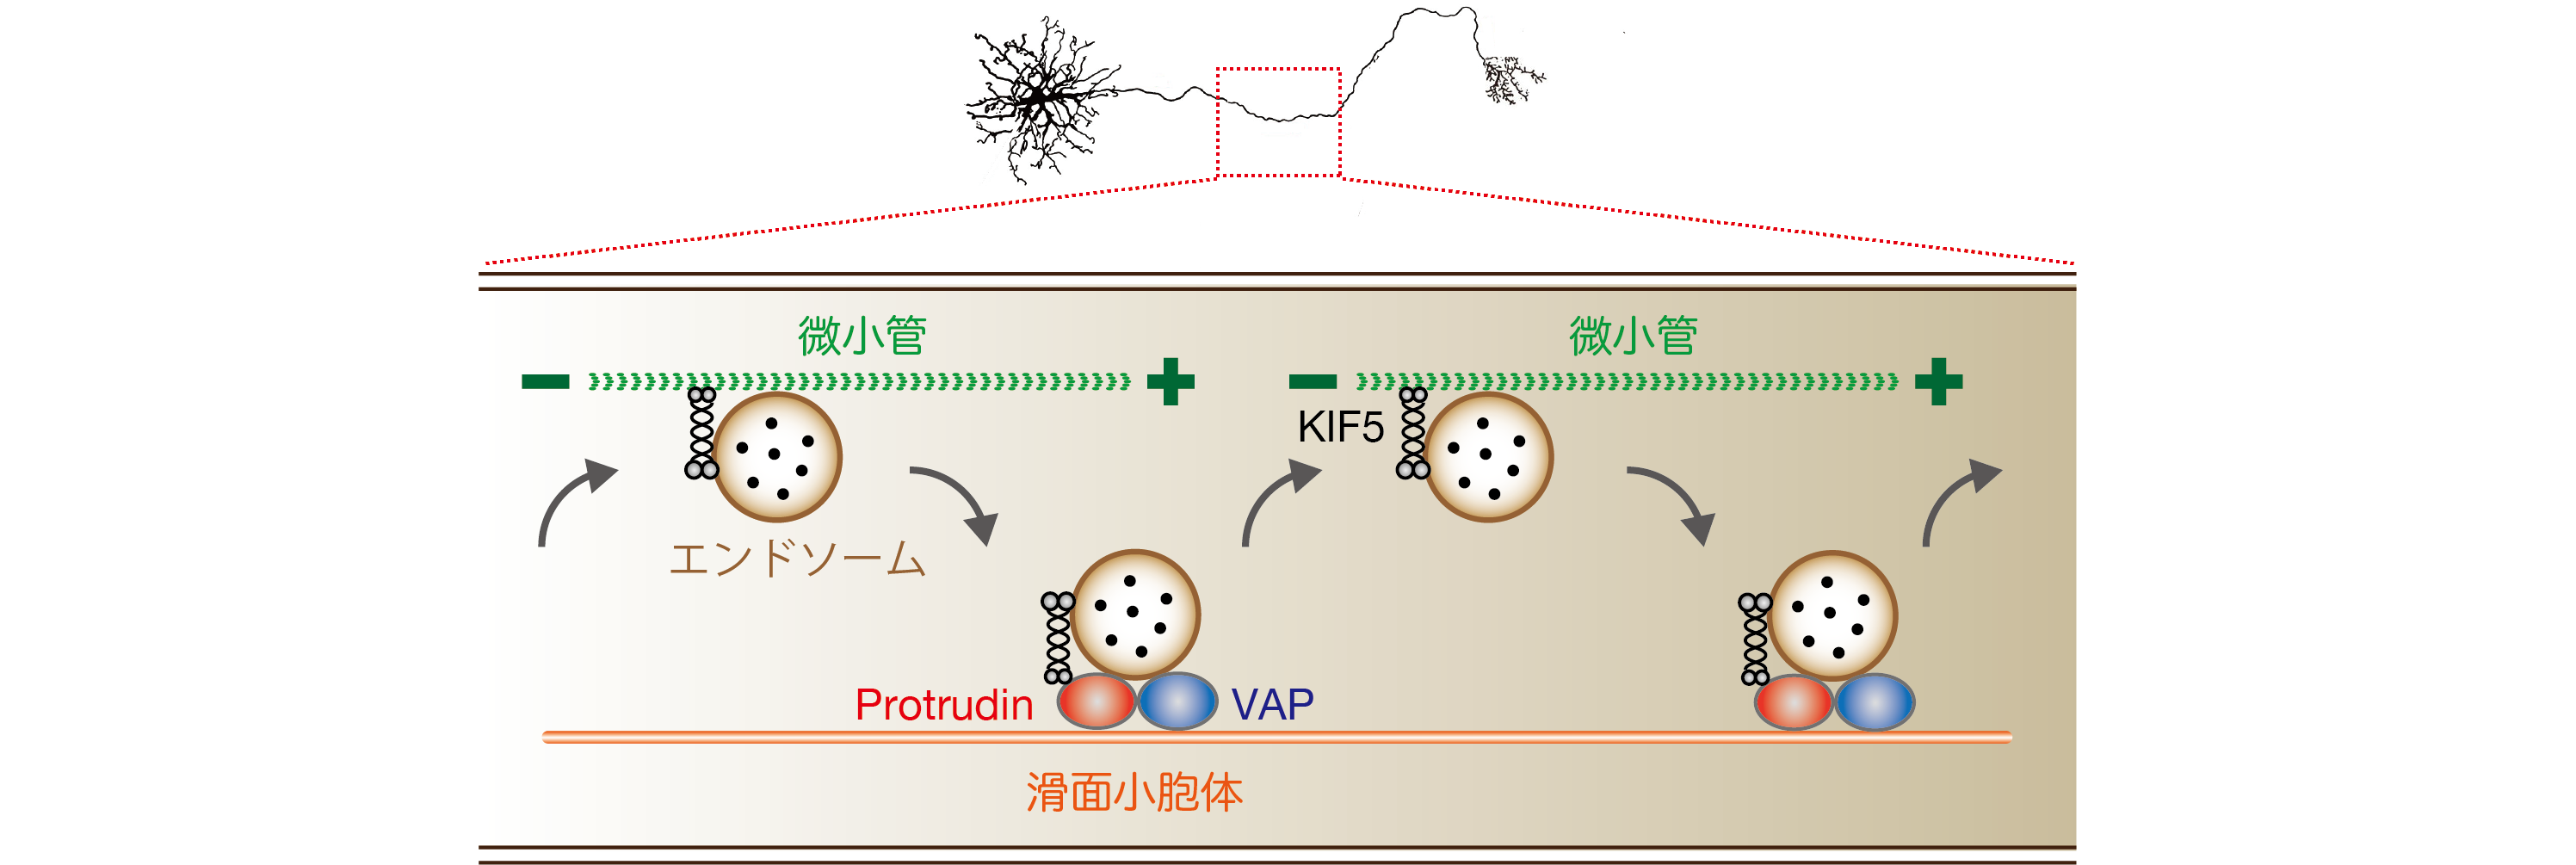 図3　プロトルーディンは、微小管と小胞体間のエンドソーム動態を制御し、極性輸送の促進に働く。